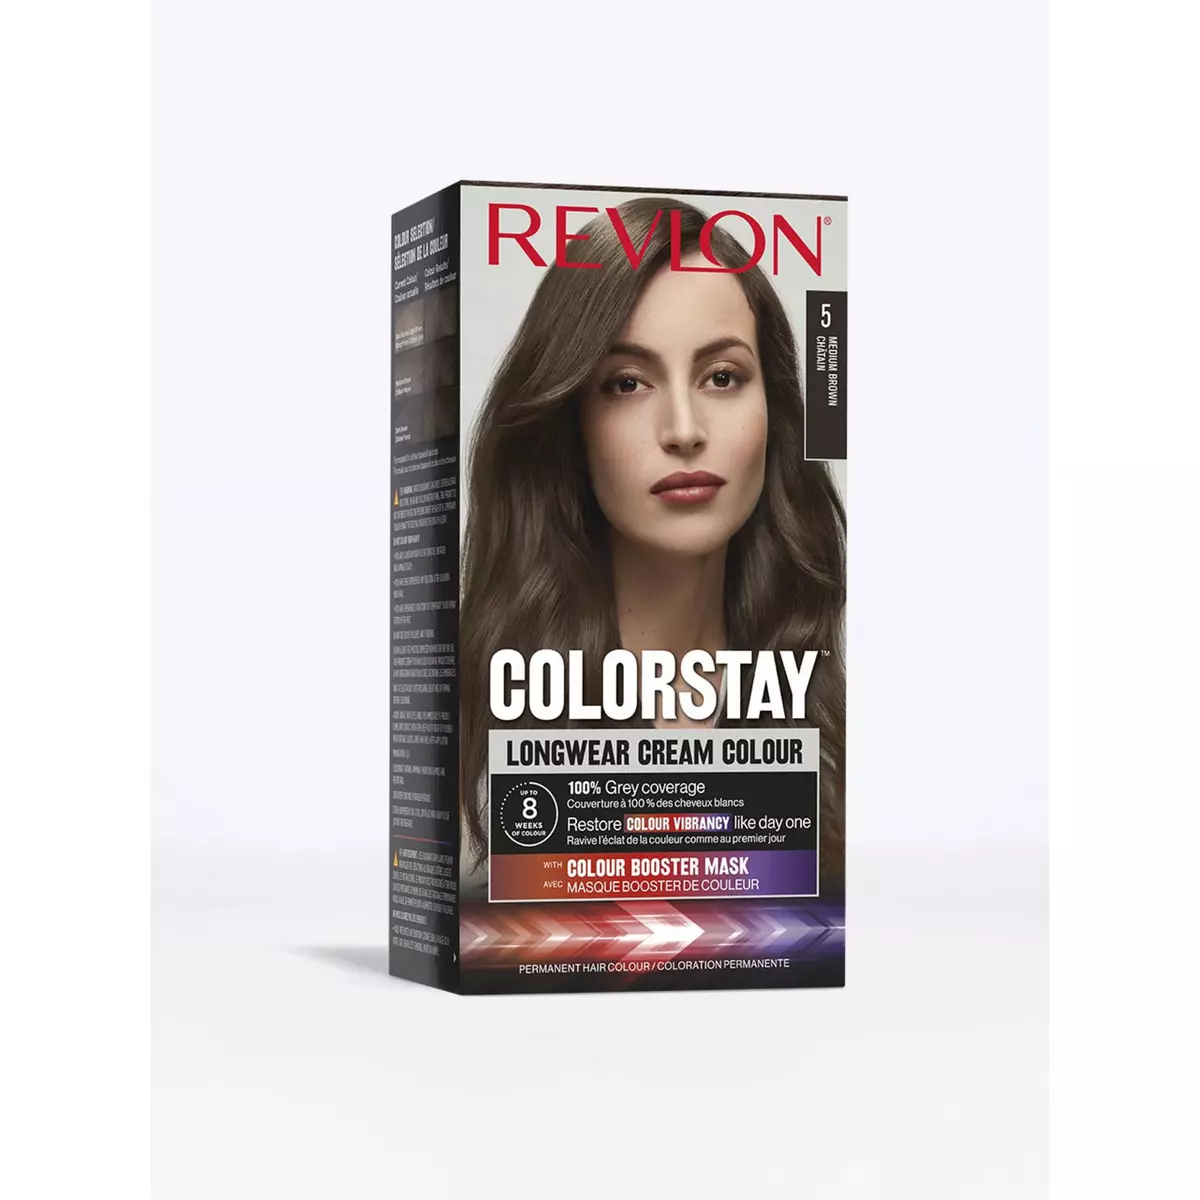 REVLON Colorstay coloration permanente 5 châtain 1 kit